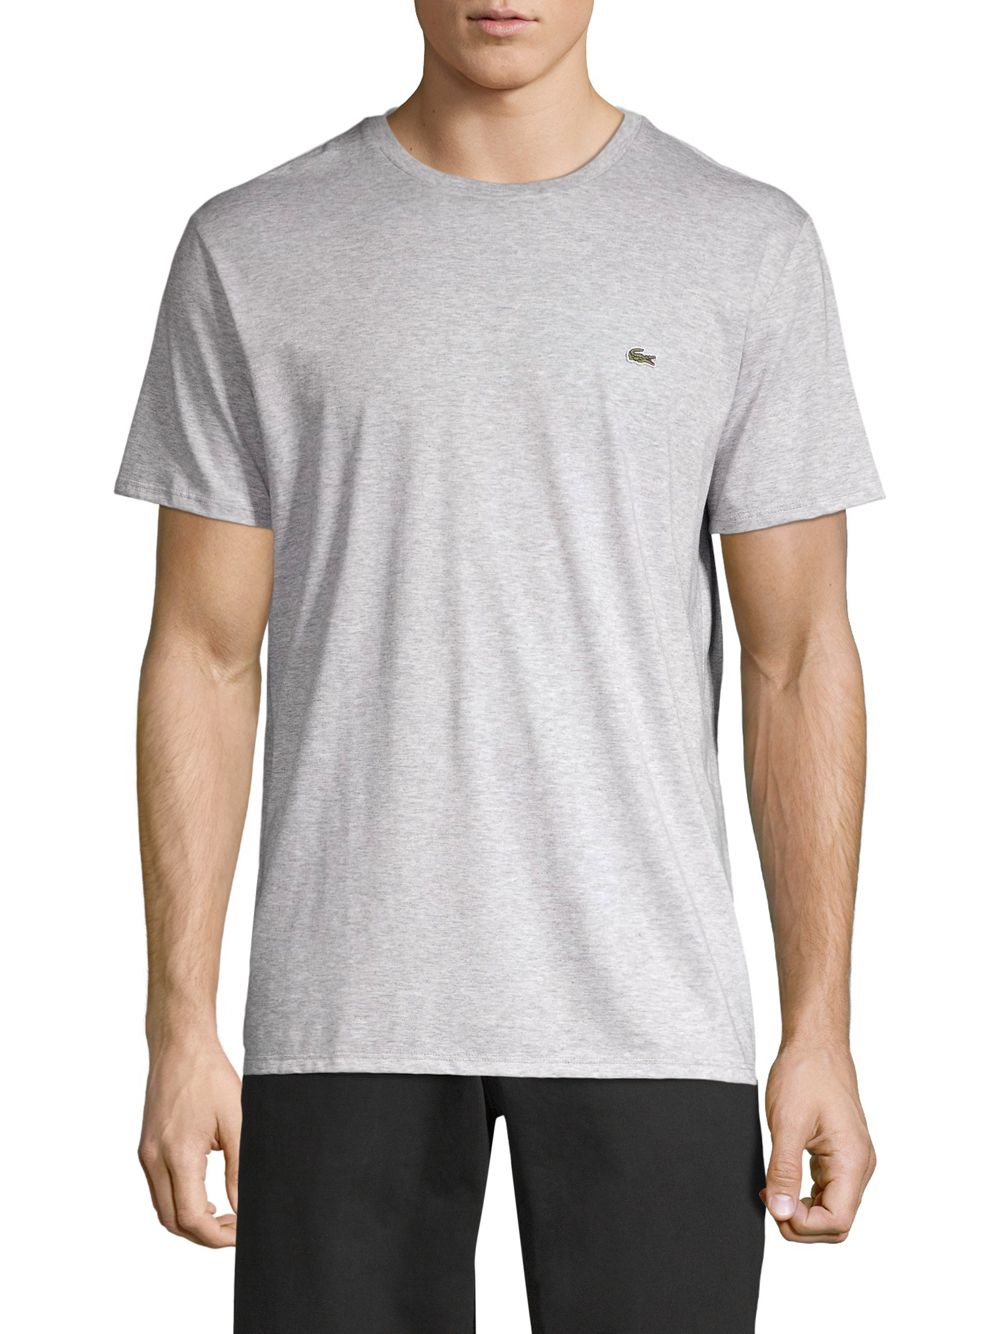 Хлопковая футболка с круглым вырезом Lacoste, серебряный